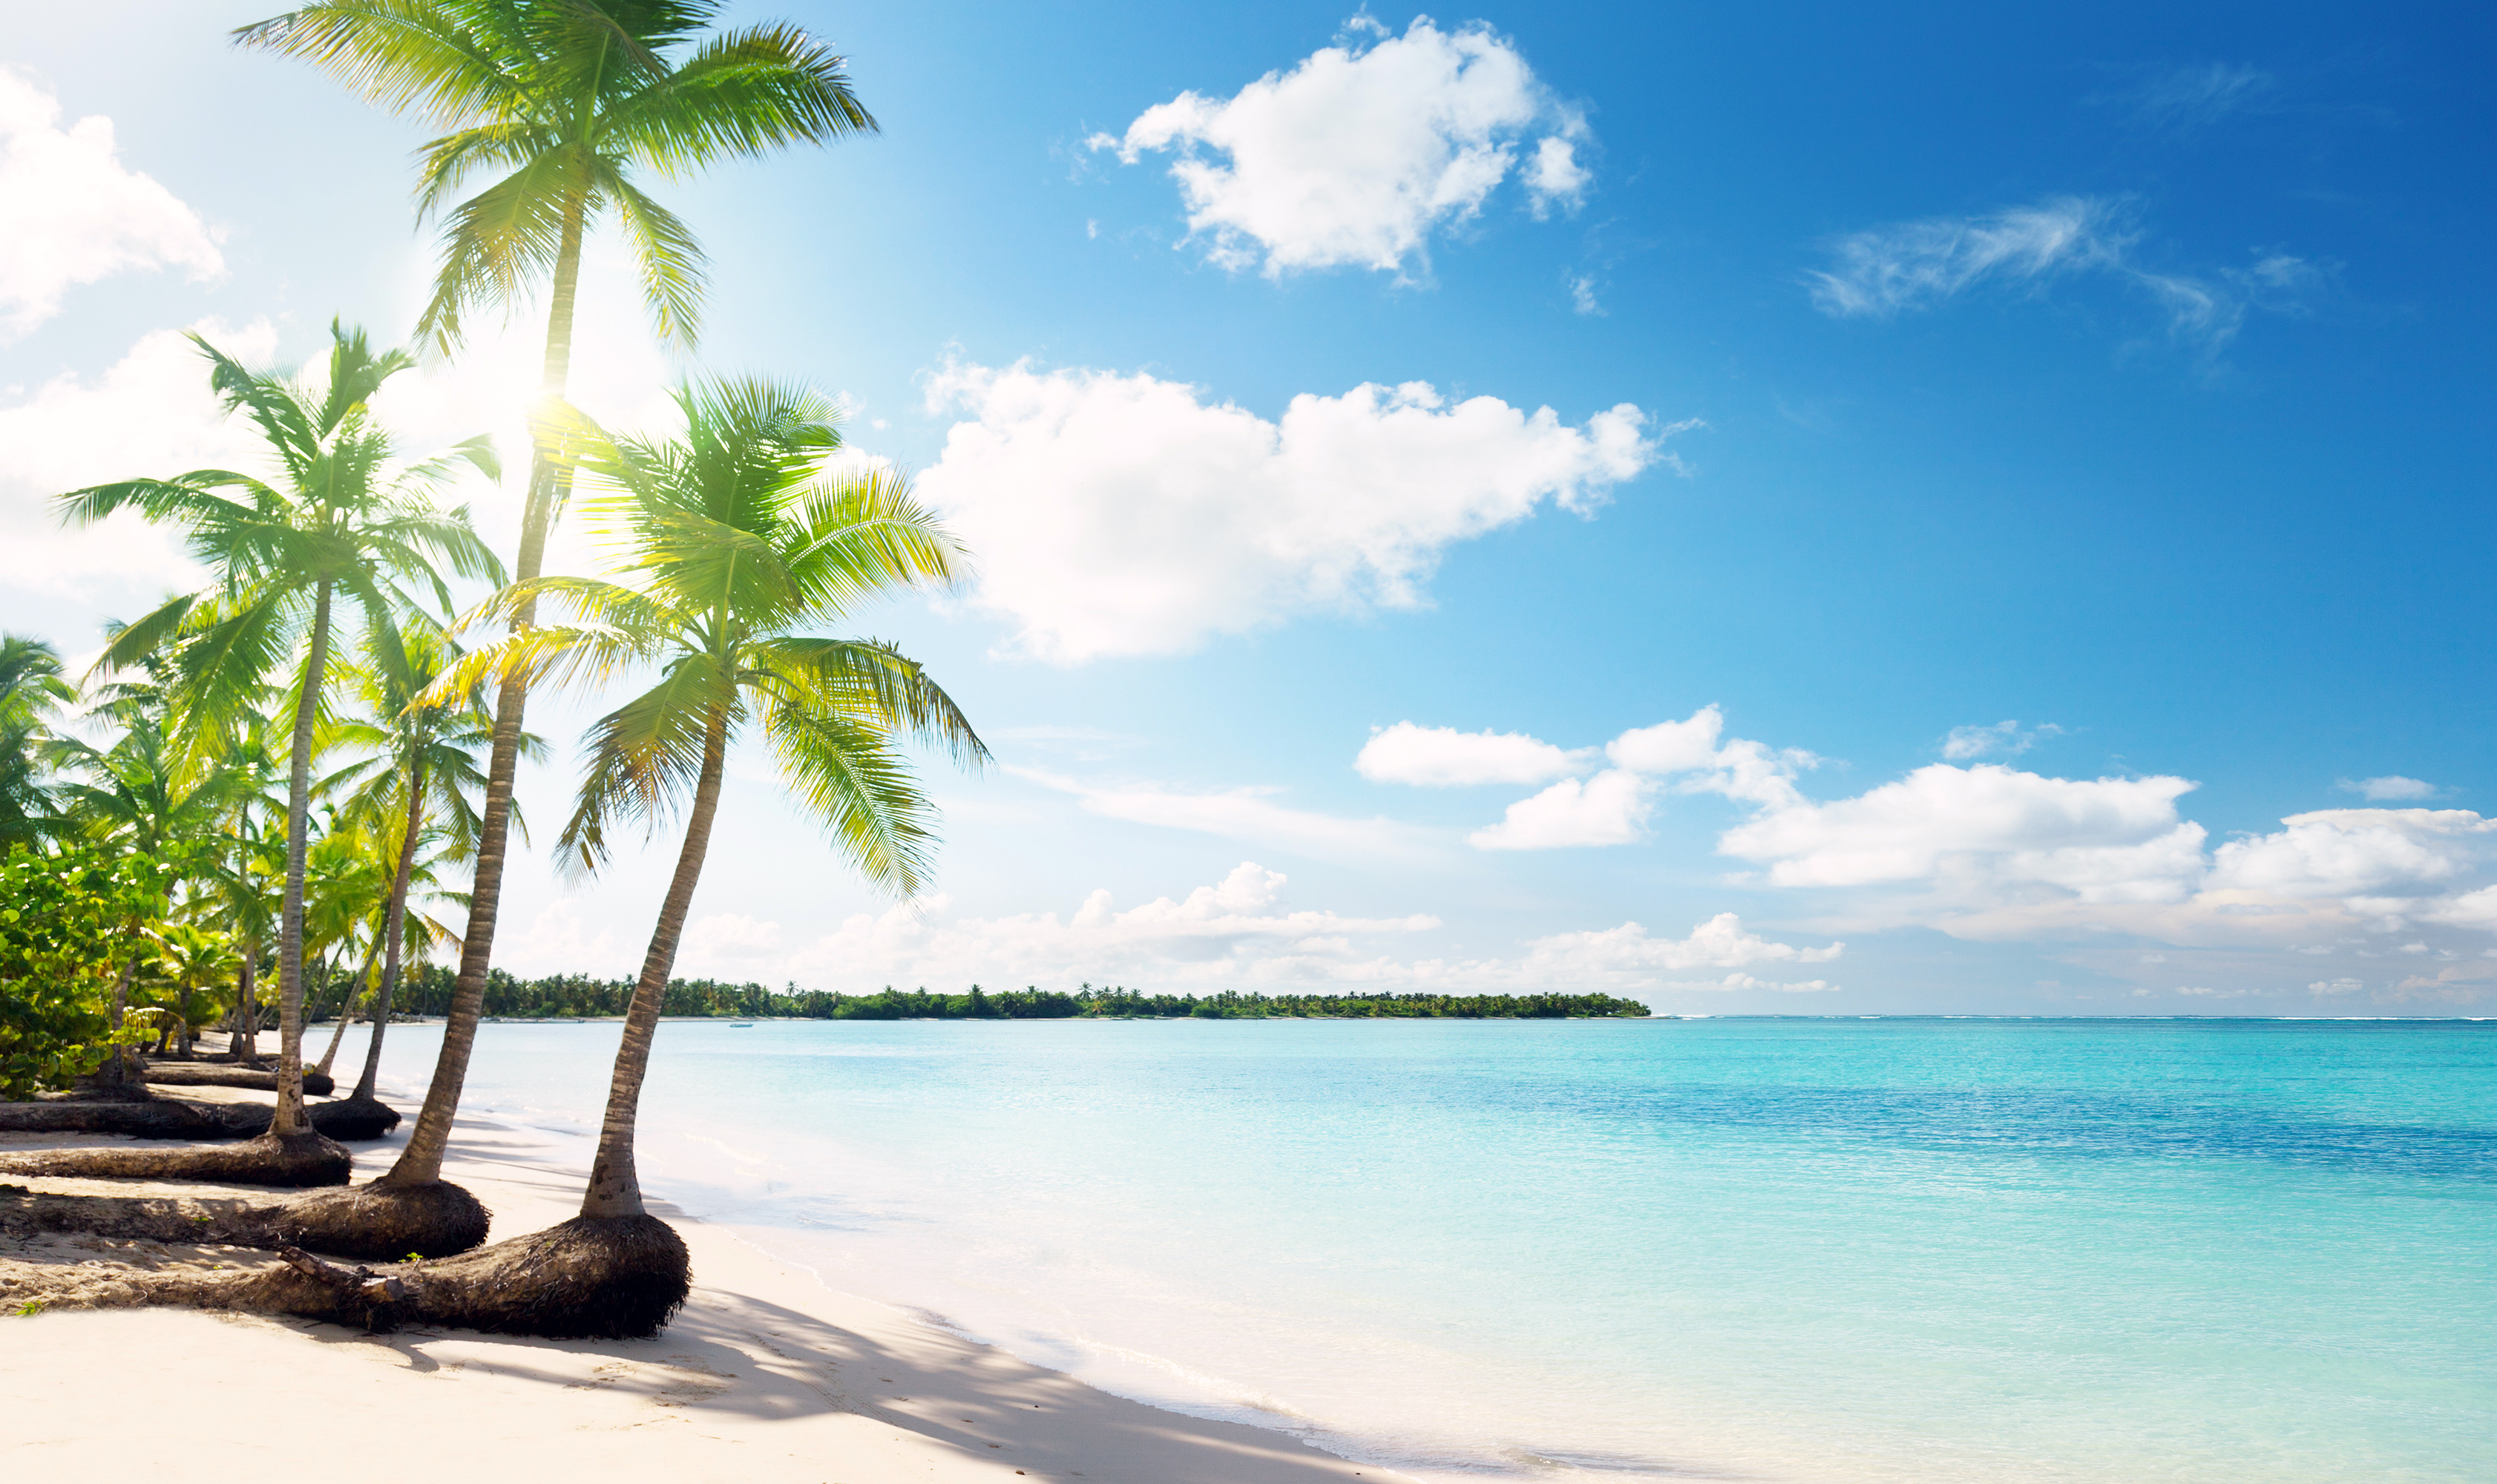 Beach tree. Парадиз остров Карибского моря. Море пальмы. Море пляж пальмы. Море пальмы и песок.